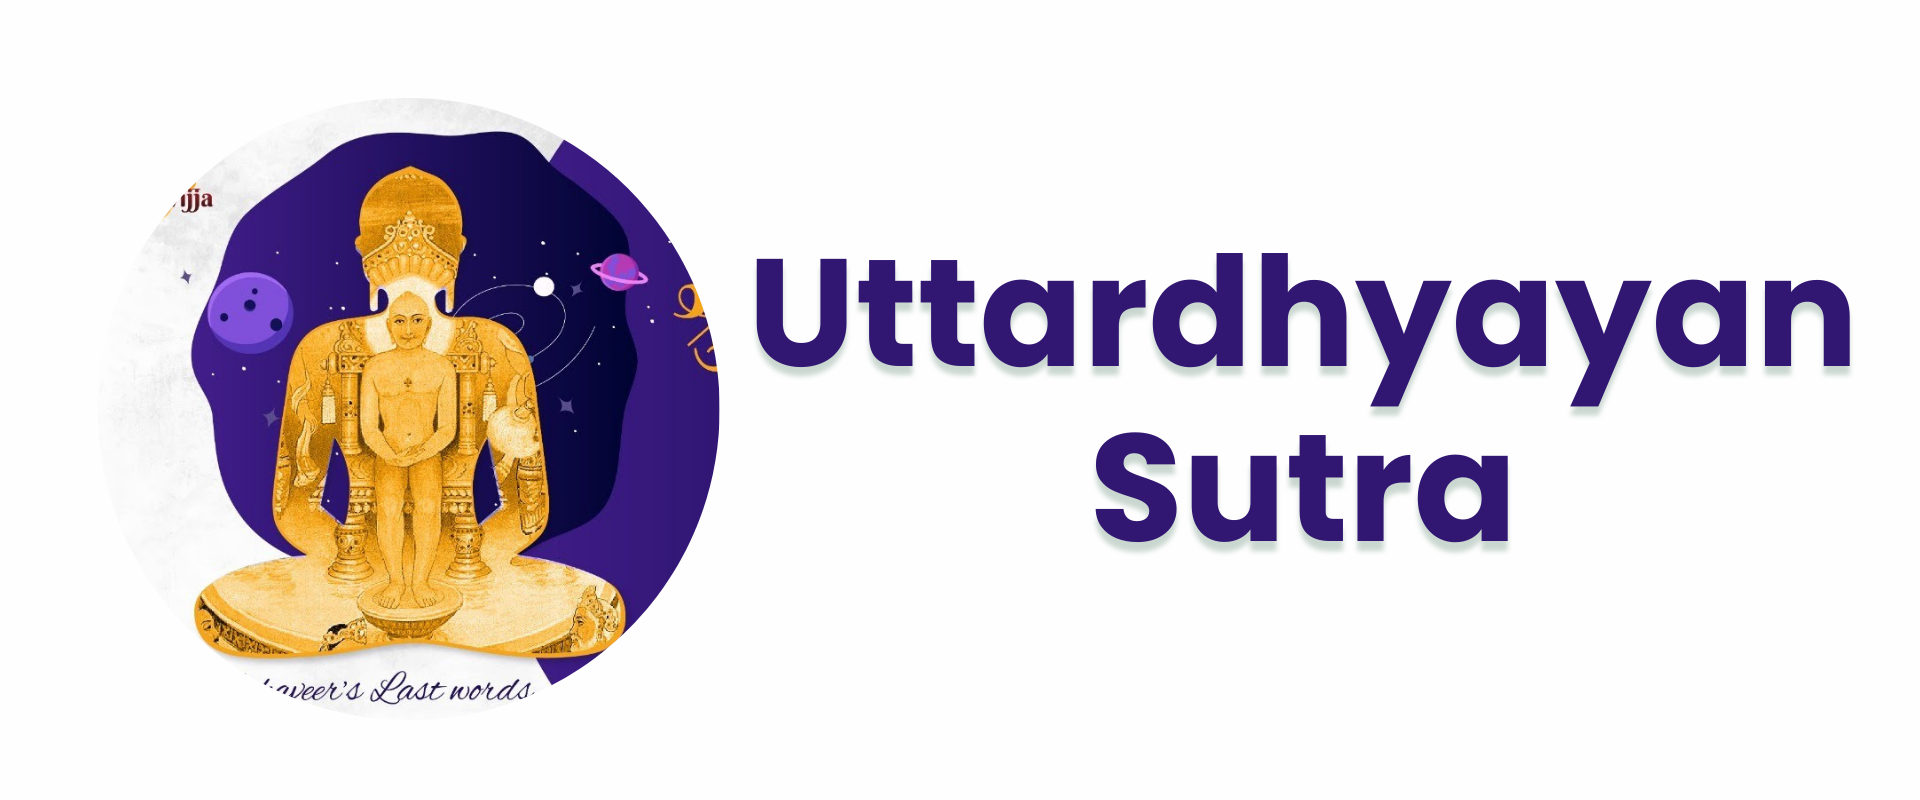 Uttardhyayan Sutra